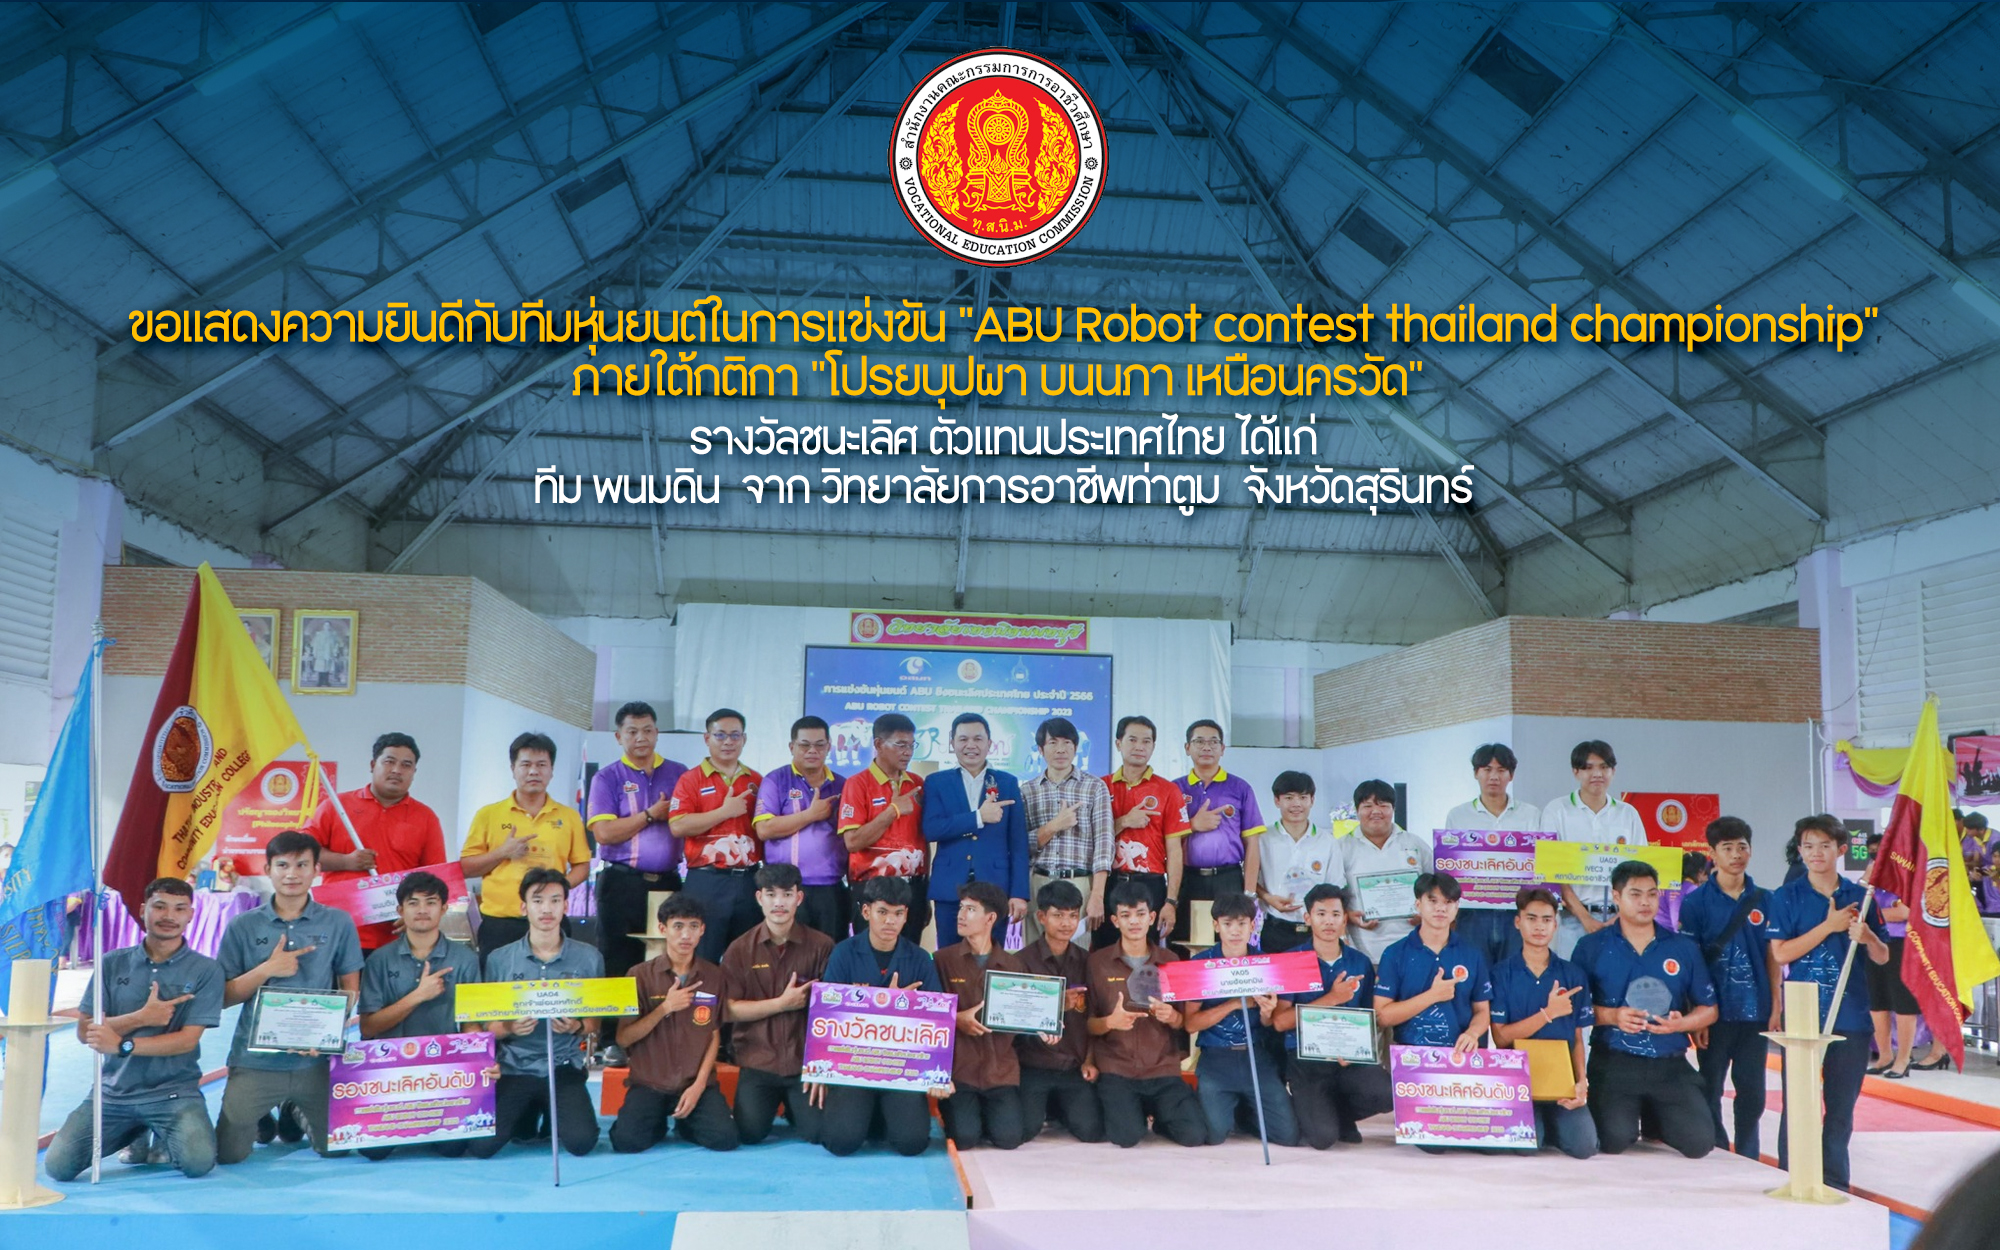 สอจ.นนทบุรีเป็นเจ้าภาพจัดแข่งขันหุ่นยนต์ ABU robot contest Thailand championship 2023 ณ หอประชุมศรีนนท์ วิทยาลัยเทคนิคนนทบุรี